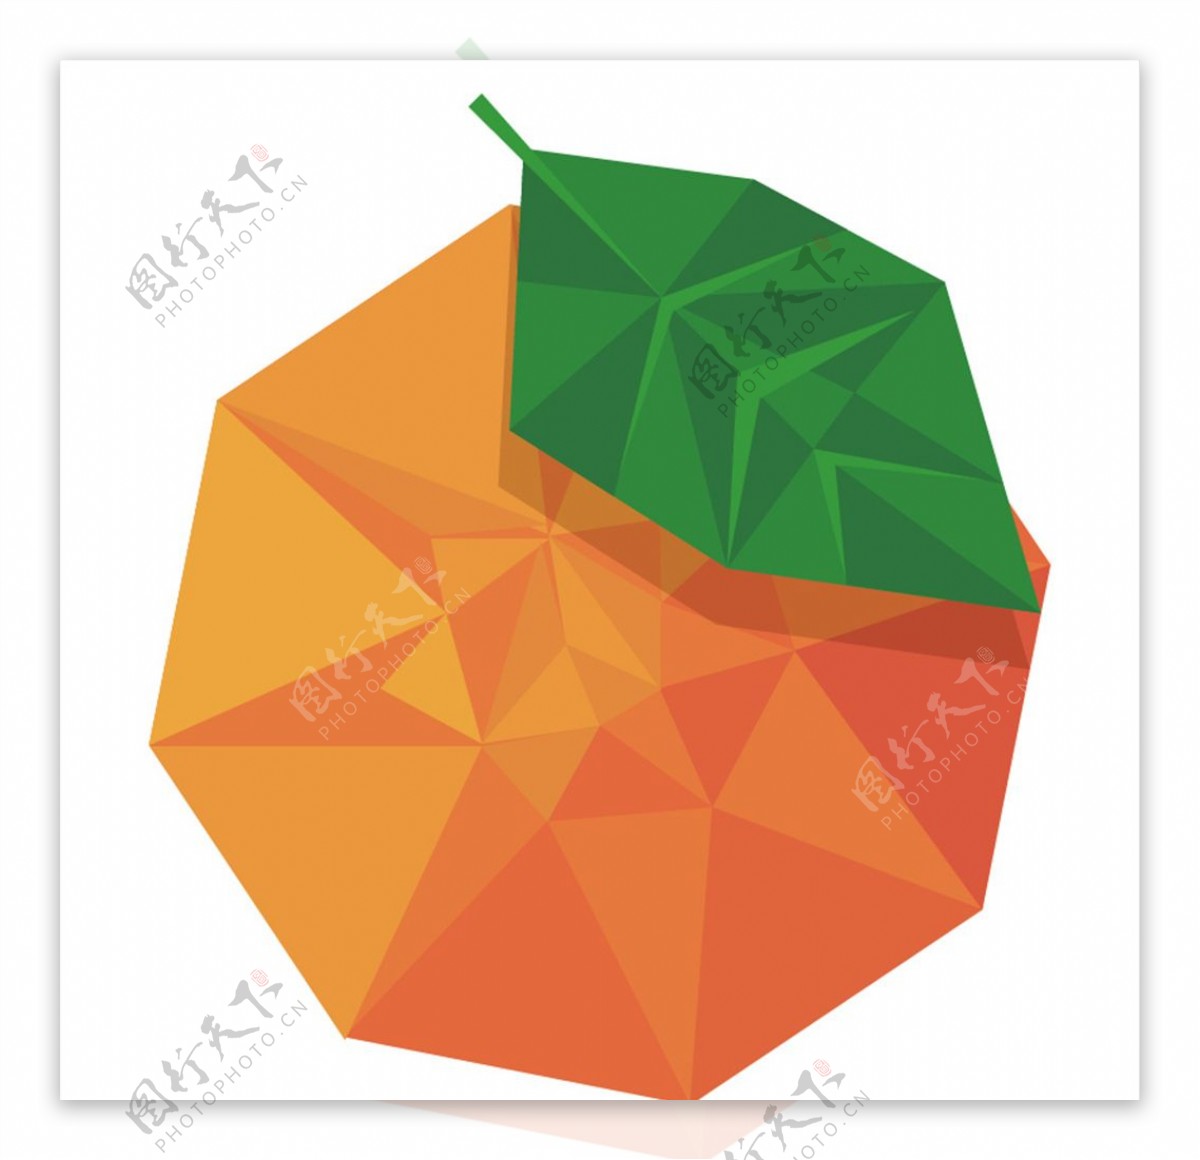 菱形橙子矢量图